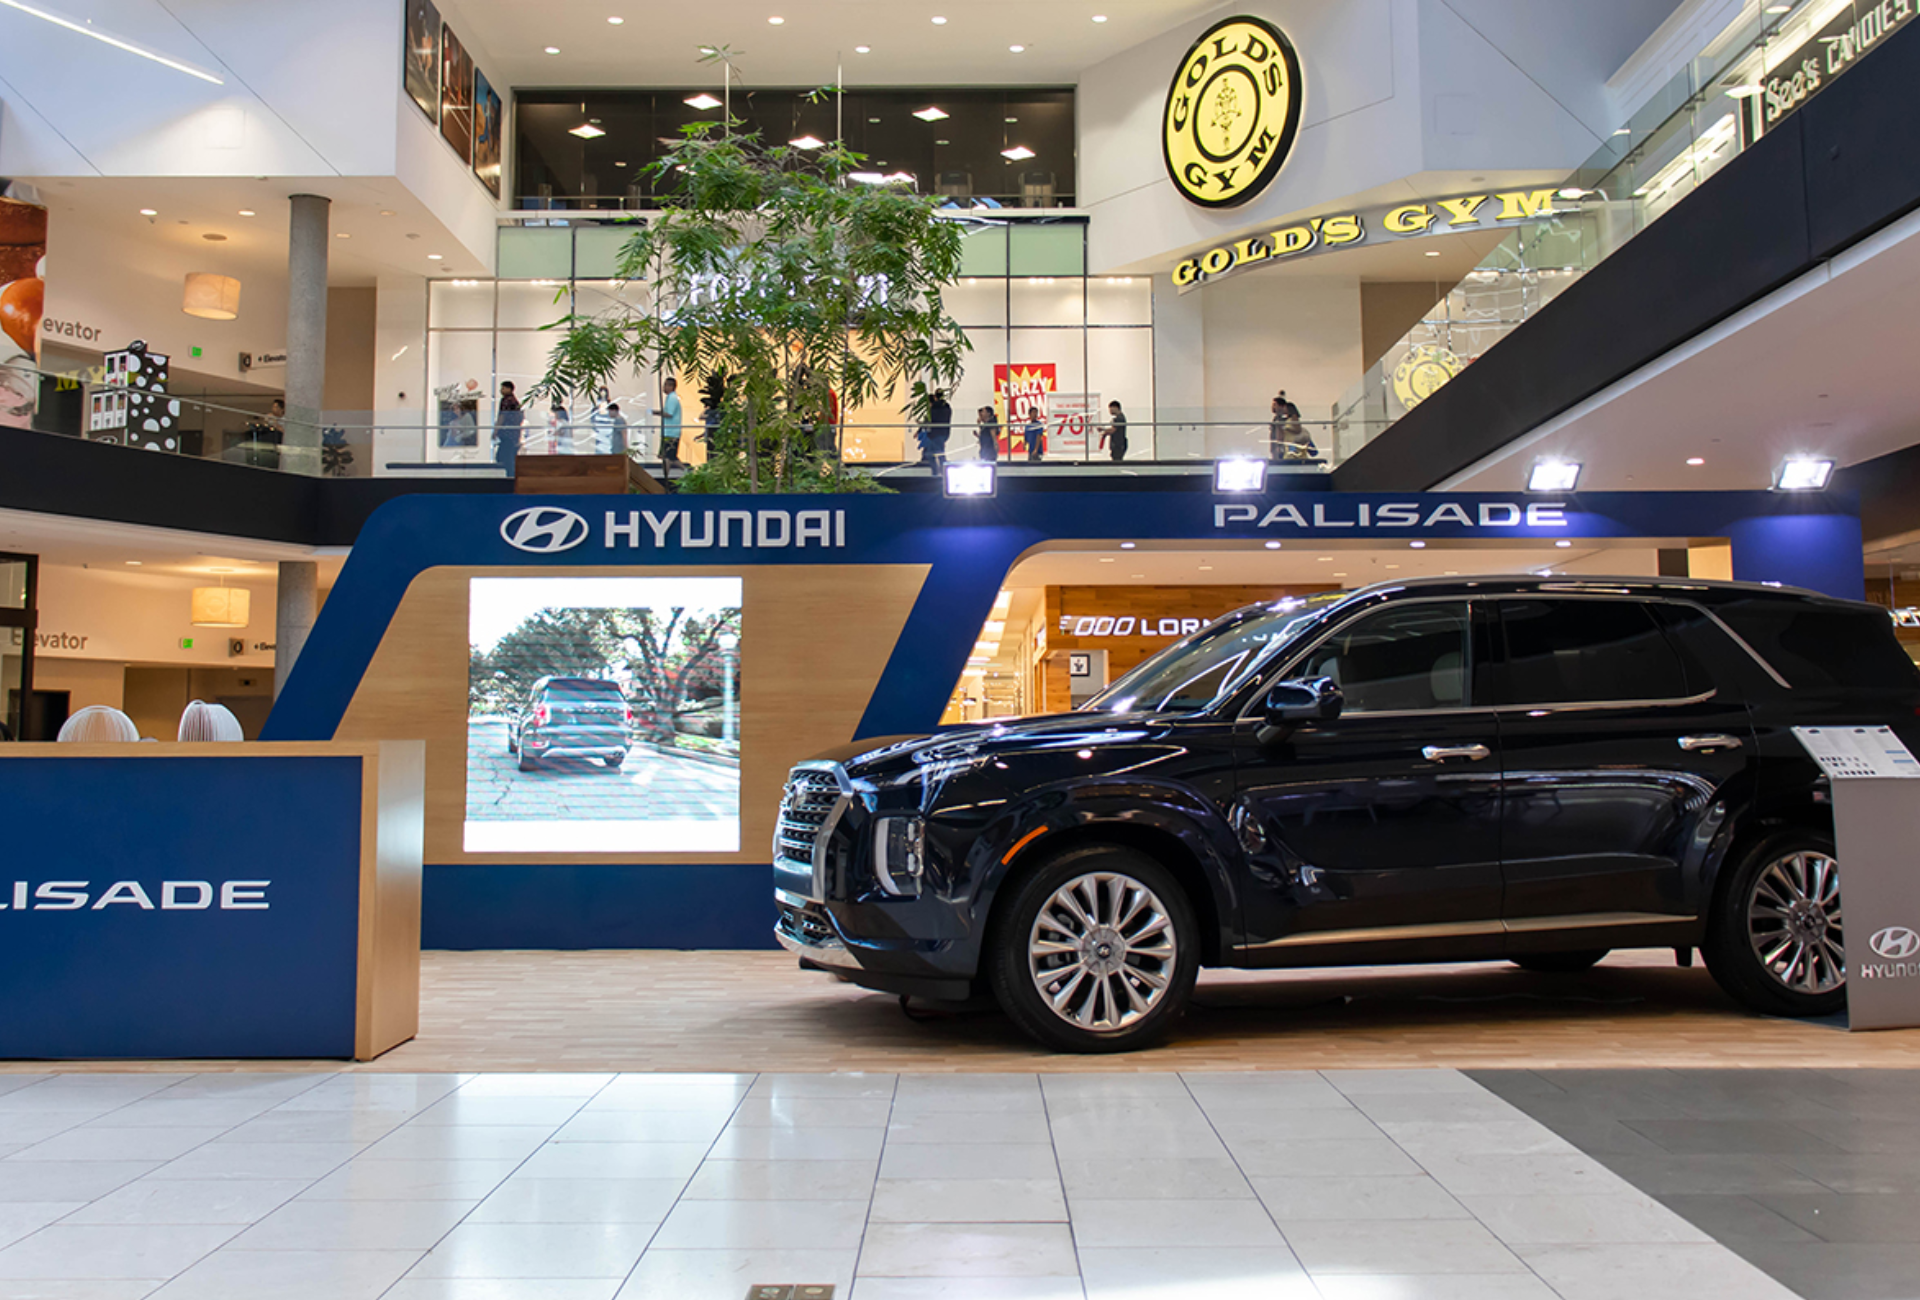 Hyundai Vehicle Display at Westfield Santa Anita Mall